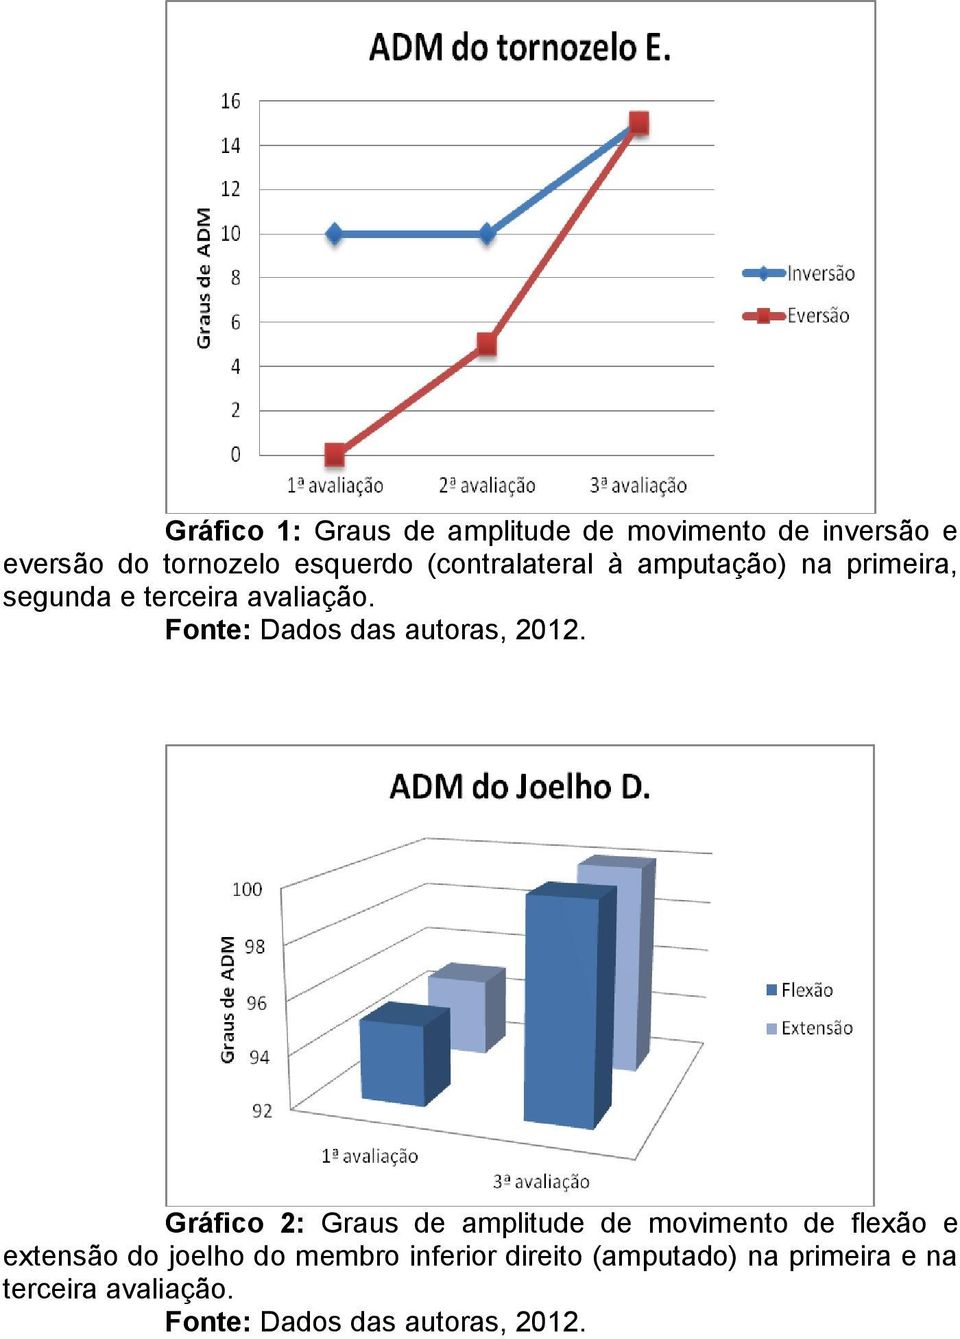 Fonte: Dados das autoras, 2012.